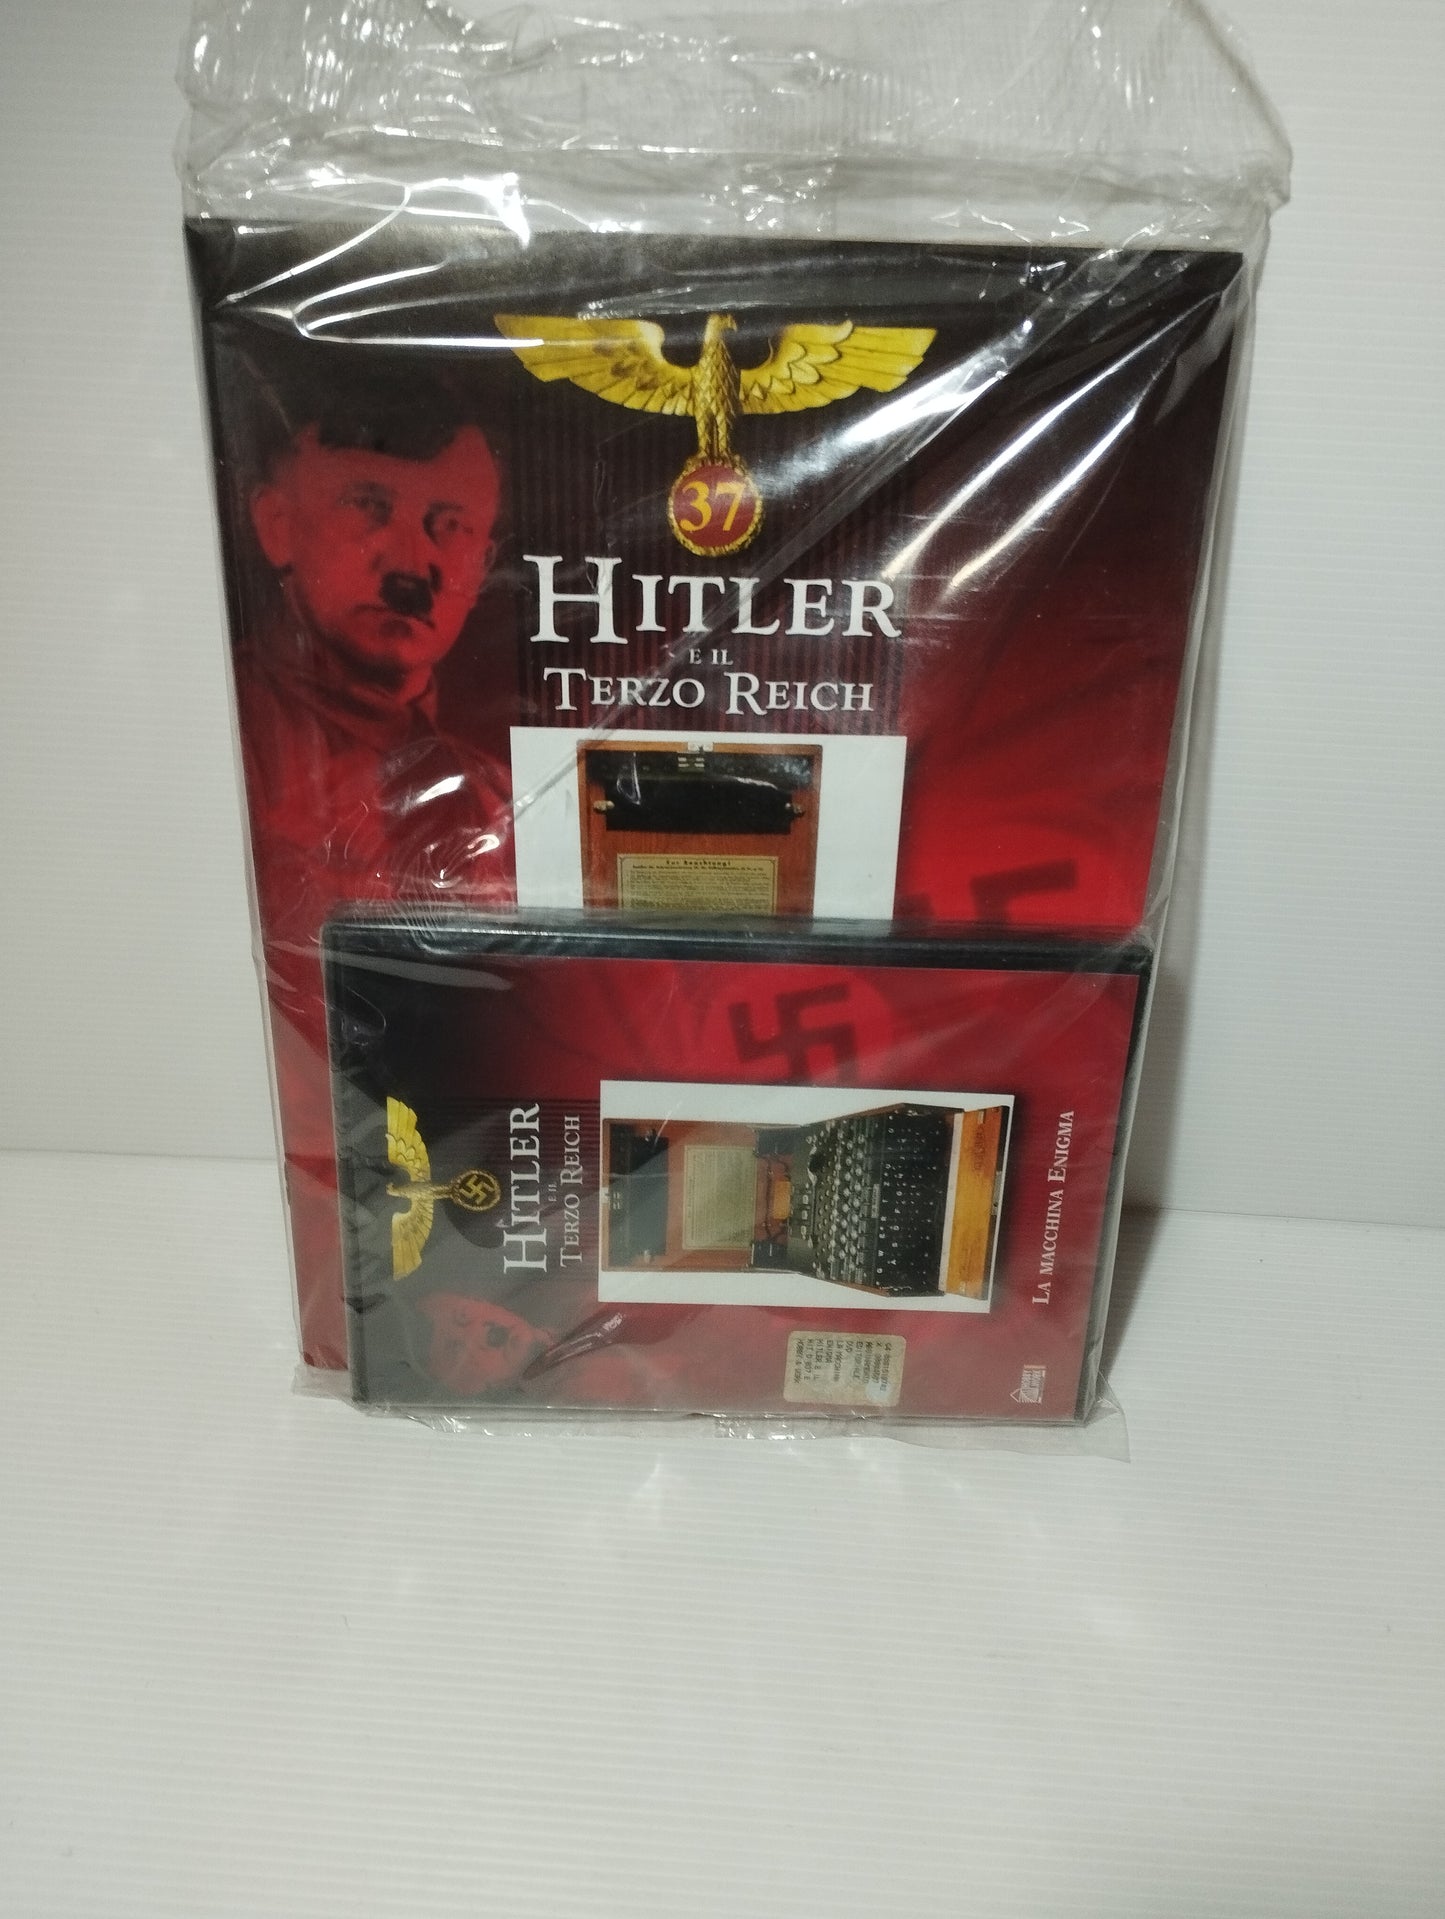 Hitler e Il Terzo Reich N.37 DVD + Fascicolo

Titolo: La macchina enigma